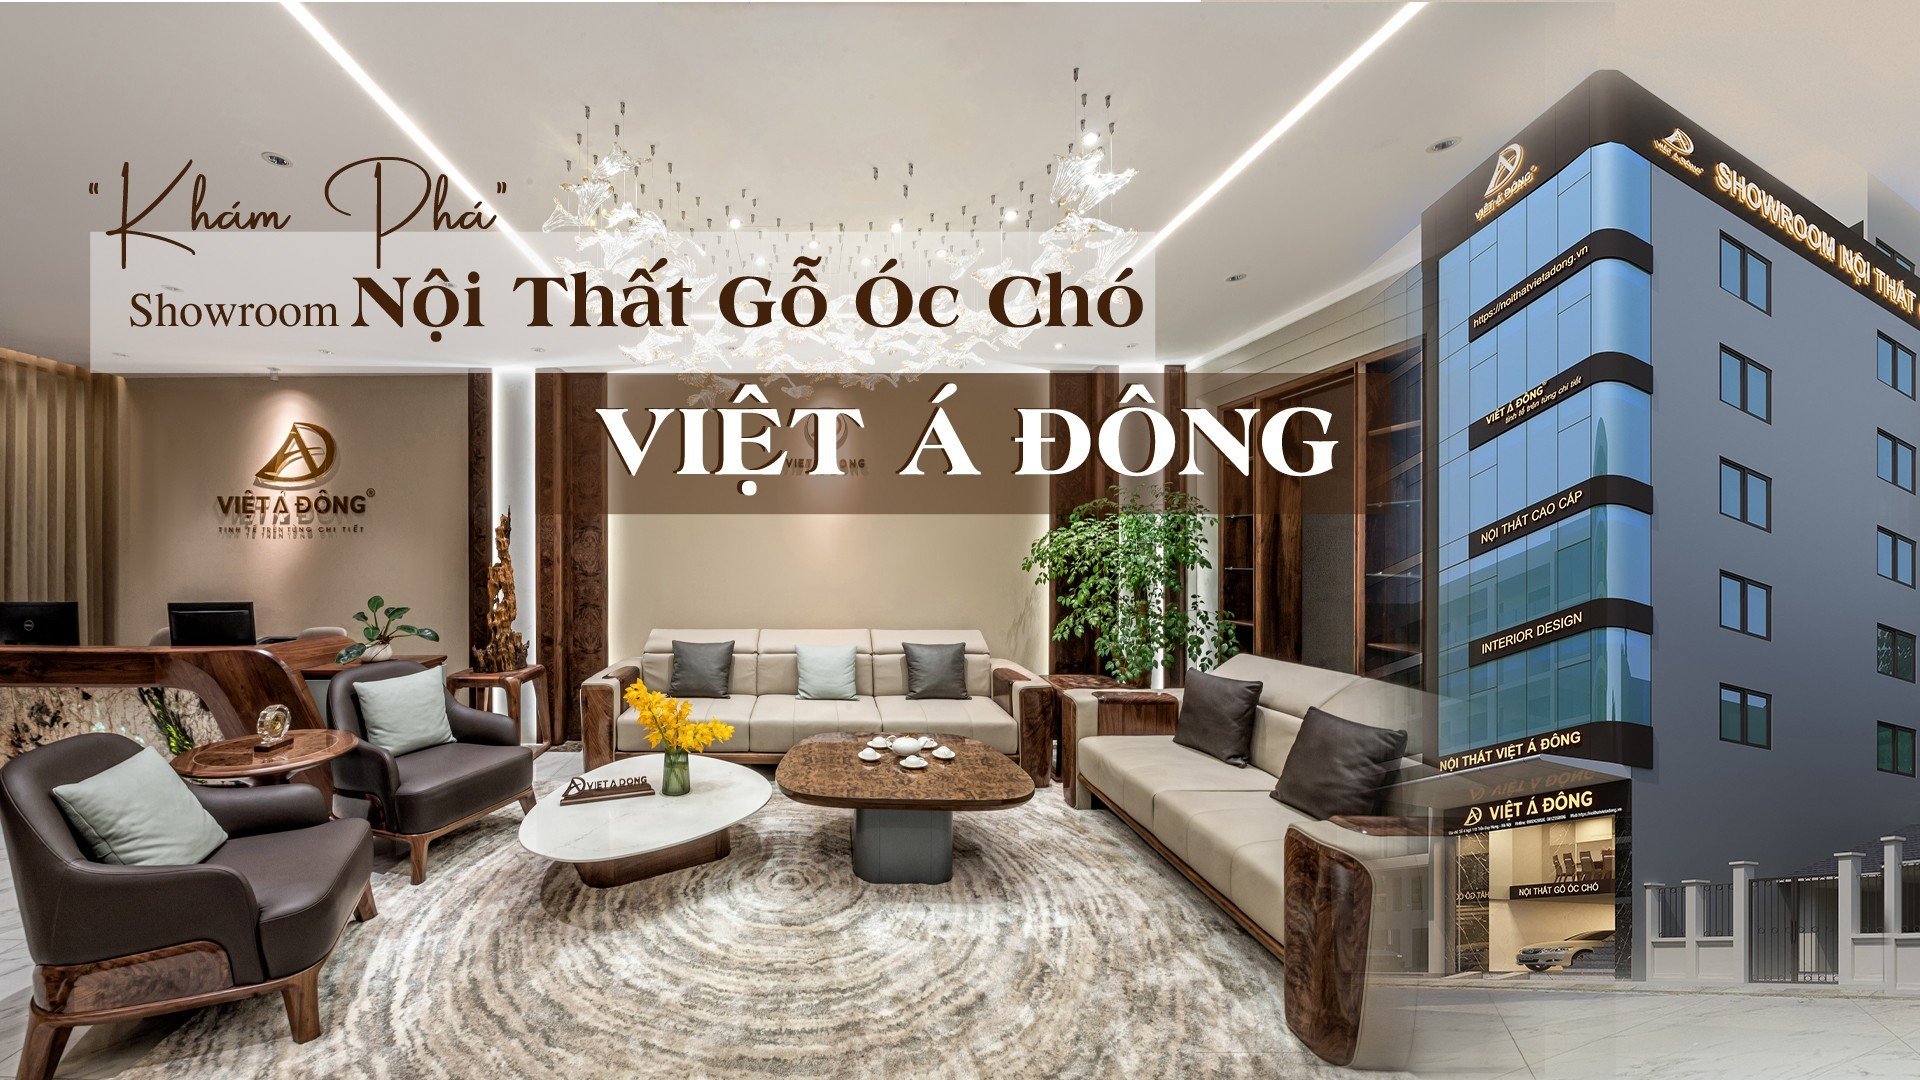 10+ địa chỉ mua bán nội thất giá rẻ, uy tín tại Hà Nội